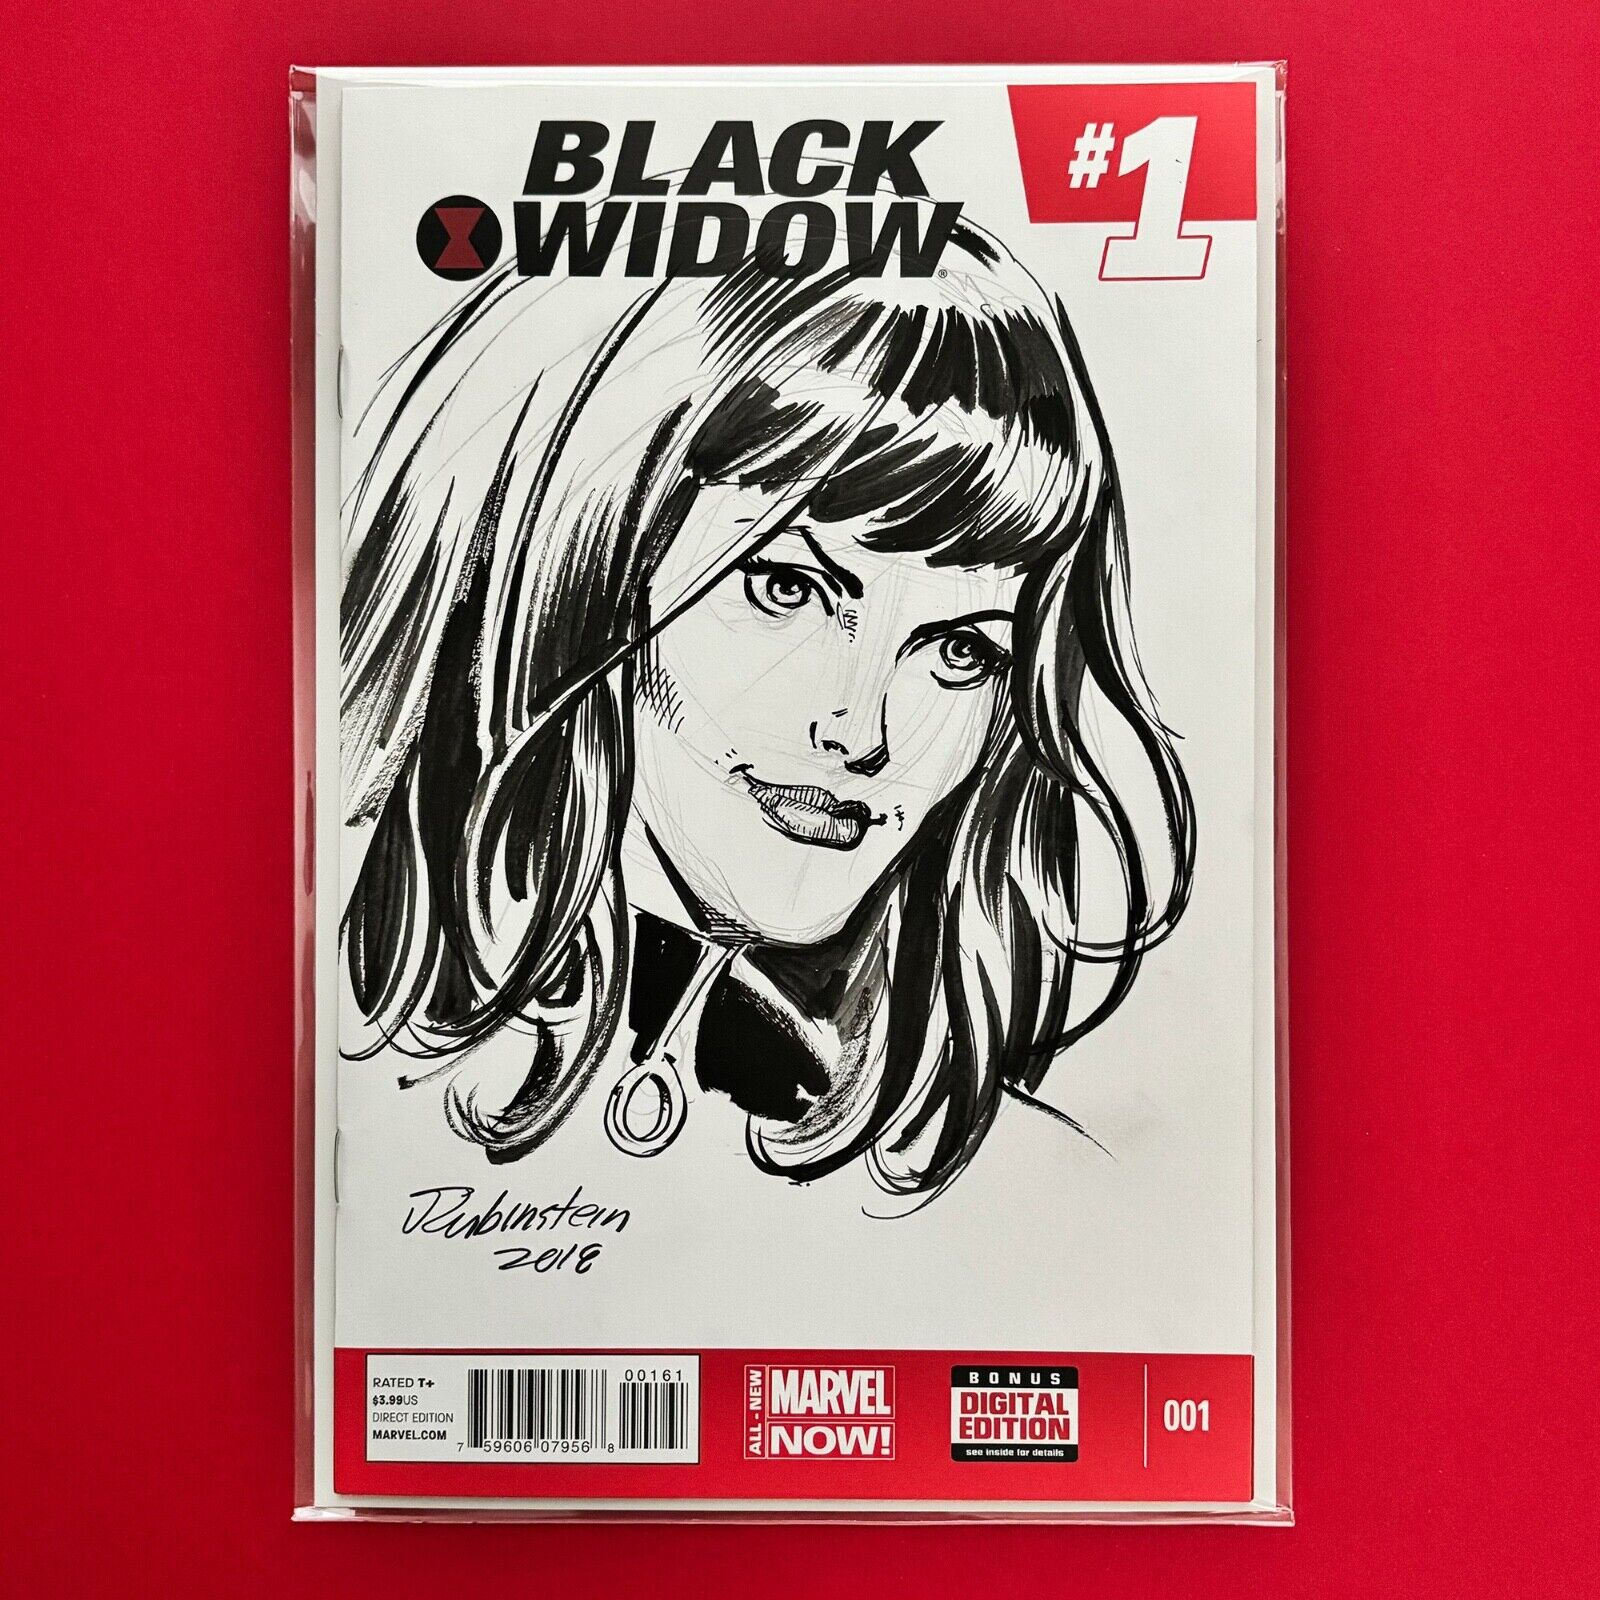 Joe Rubinstein Black Widow Original Sketch Art Drawing on Marvel Now Variant #1